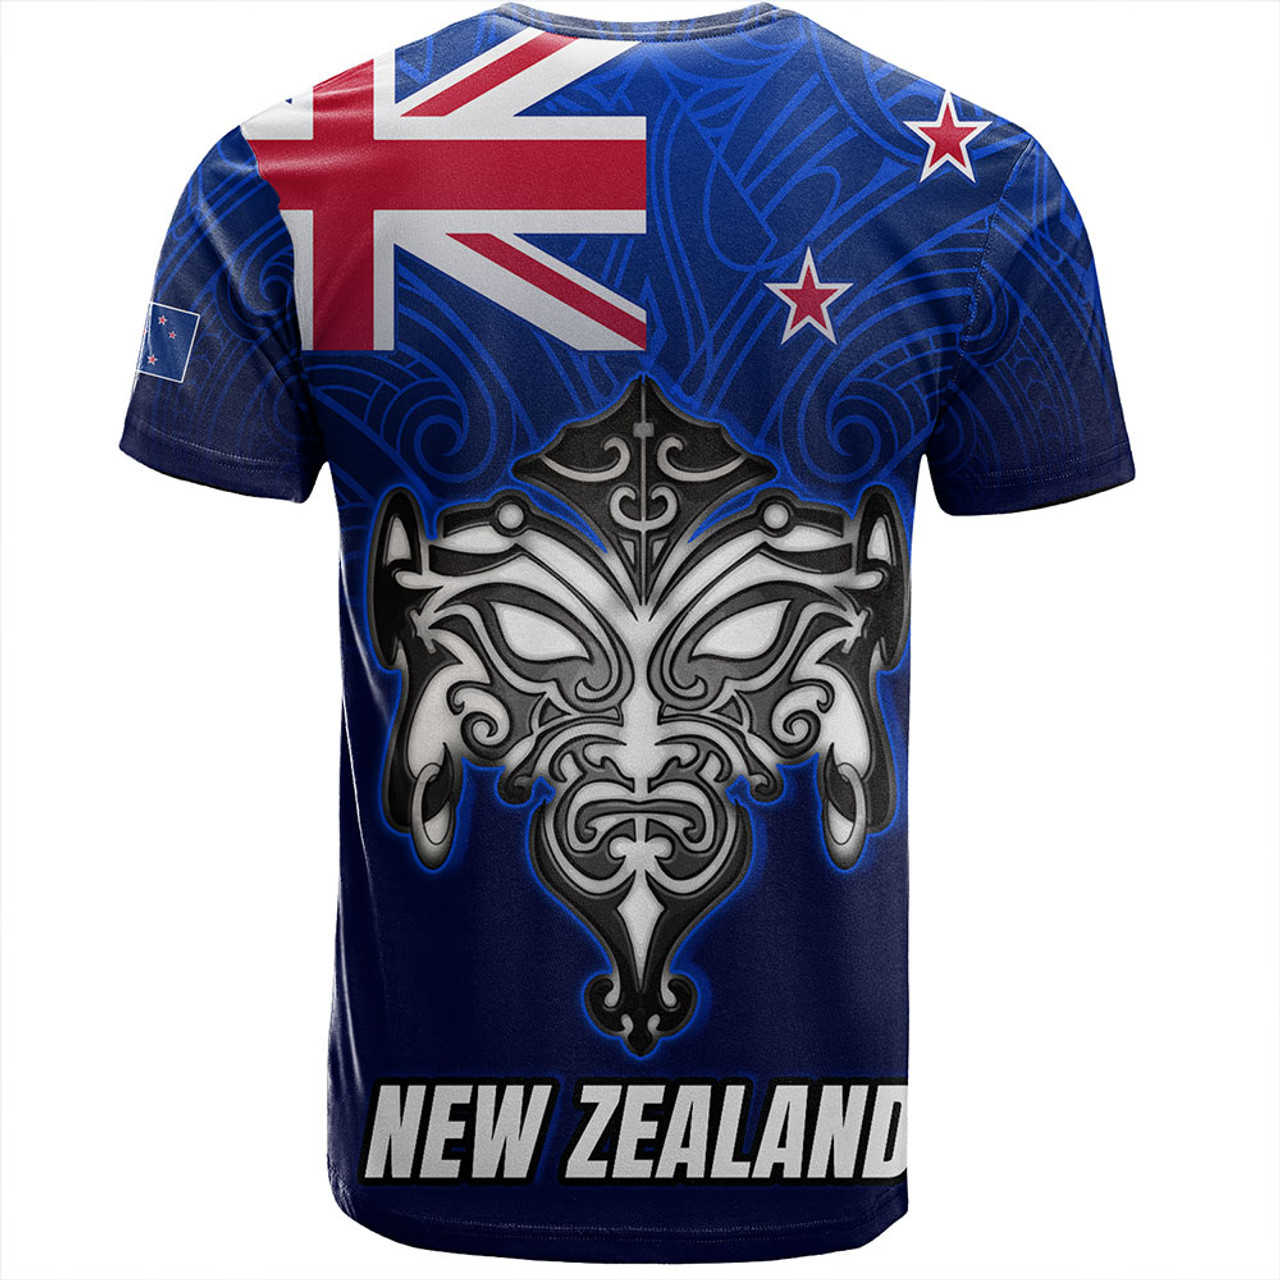 New Zealand T-Shirt - New Zealand Map Maori Face Patterns